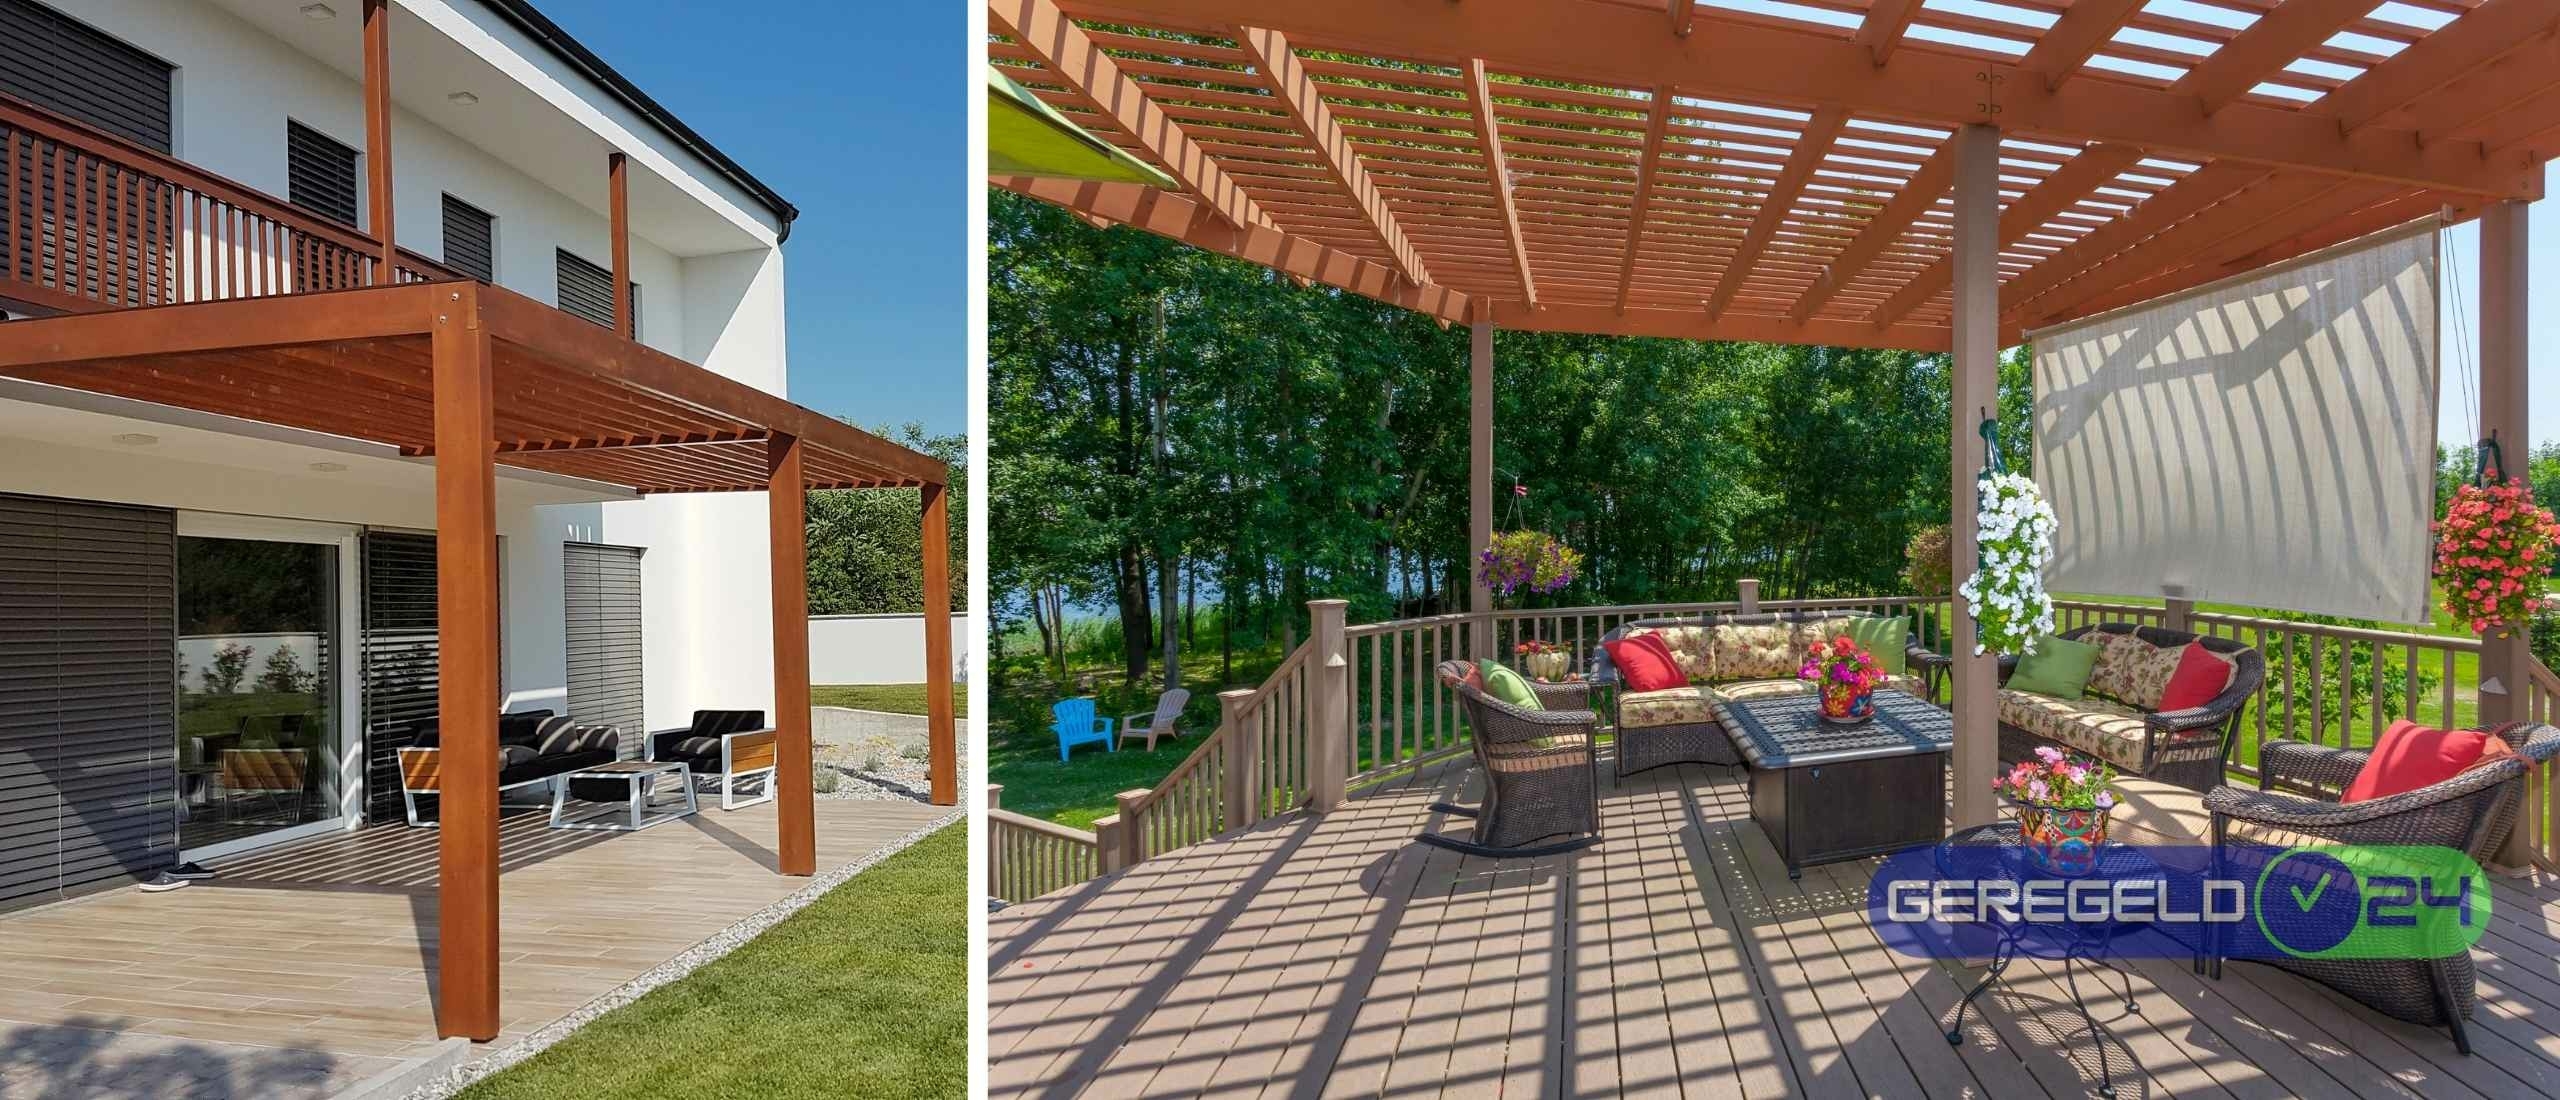 Hoe kies je de juiste veranda of pergola voor je tuin?